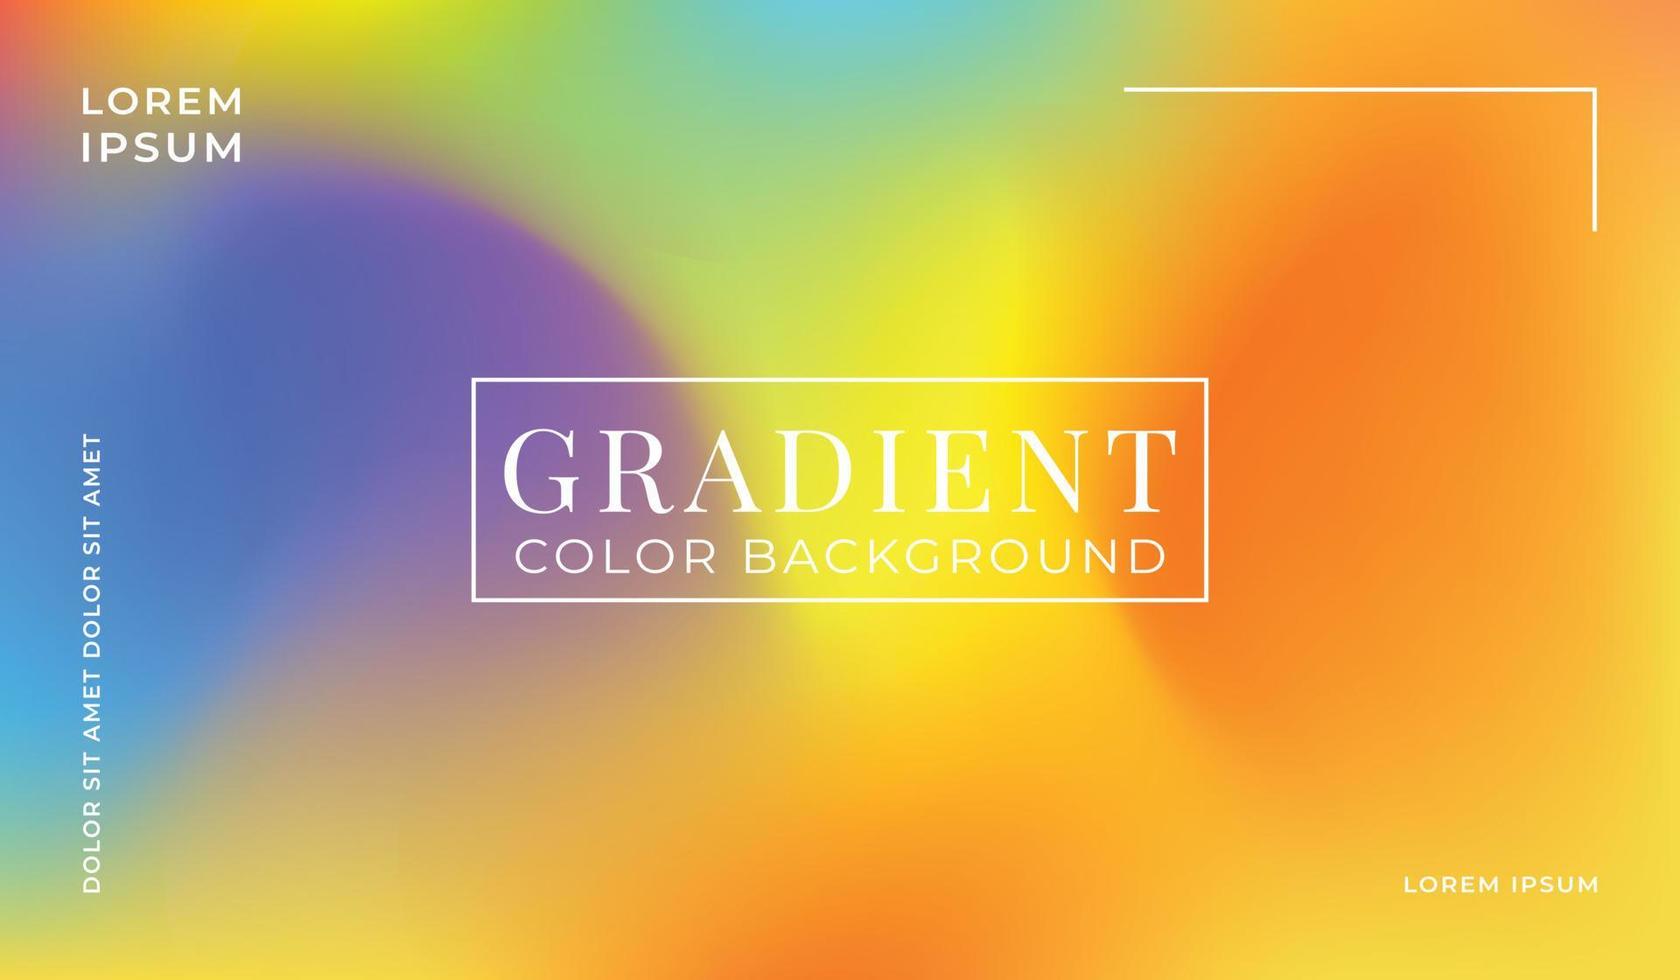 kleurrijk gradiëntontwerp als achtergrond met vloeiende grafische stijl. vectorillustratie. vector